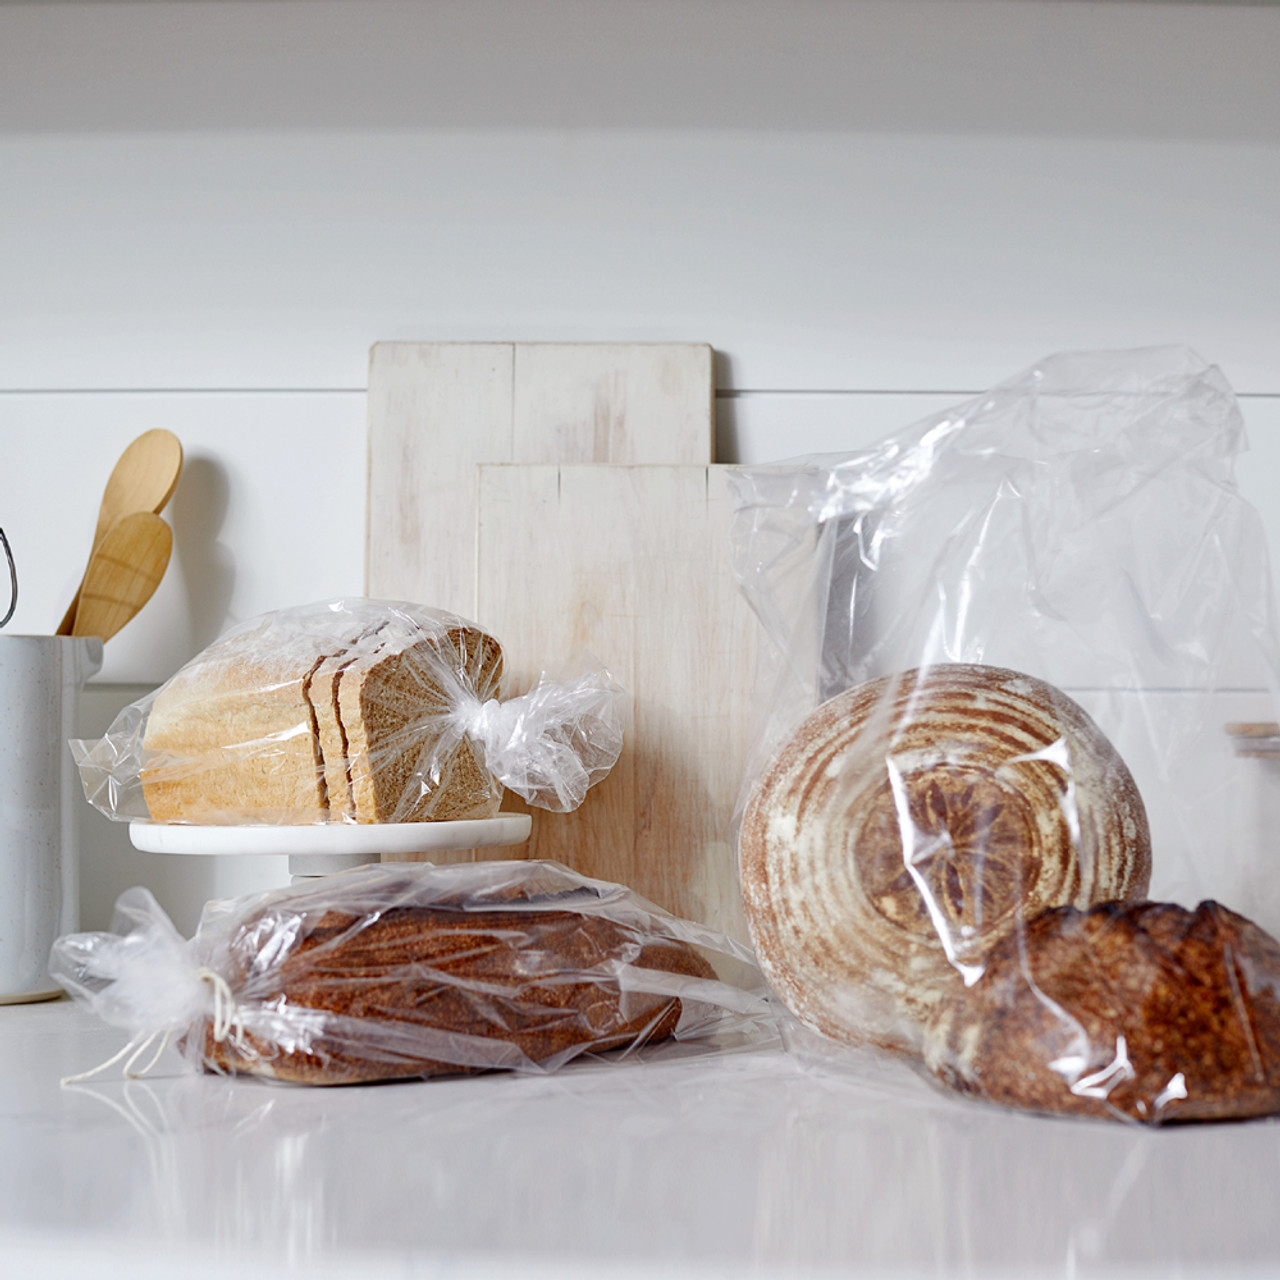 Single Bread Bags - Set of 100 - King Arthur Baking Company